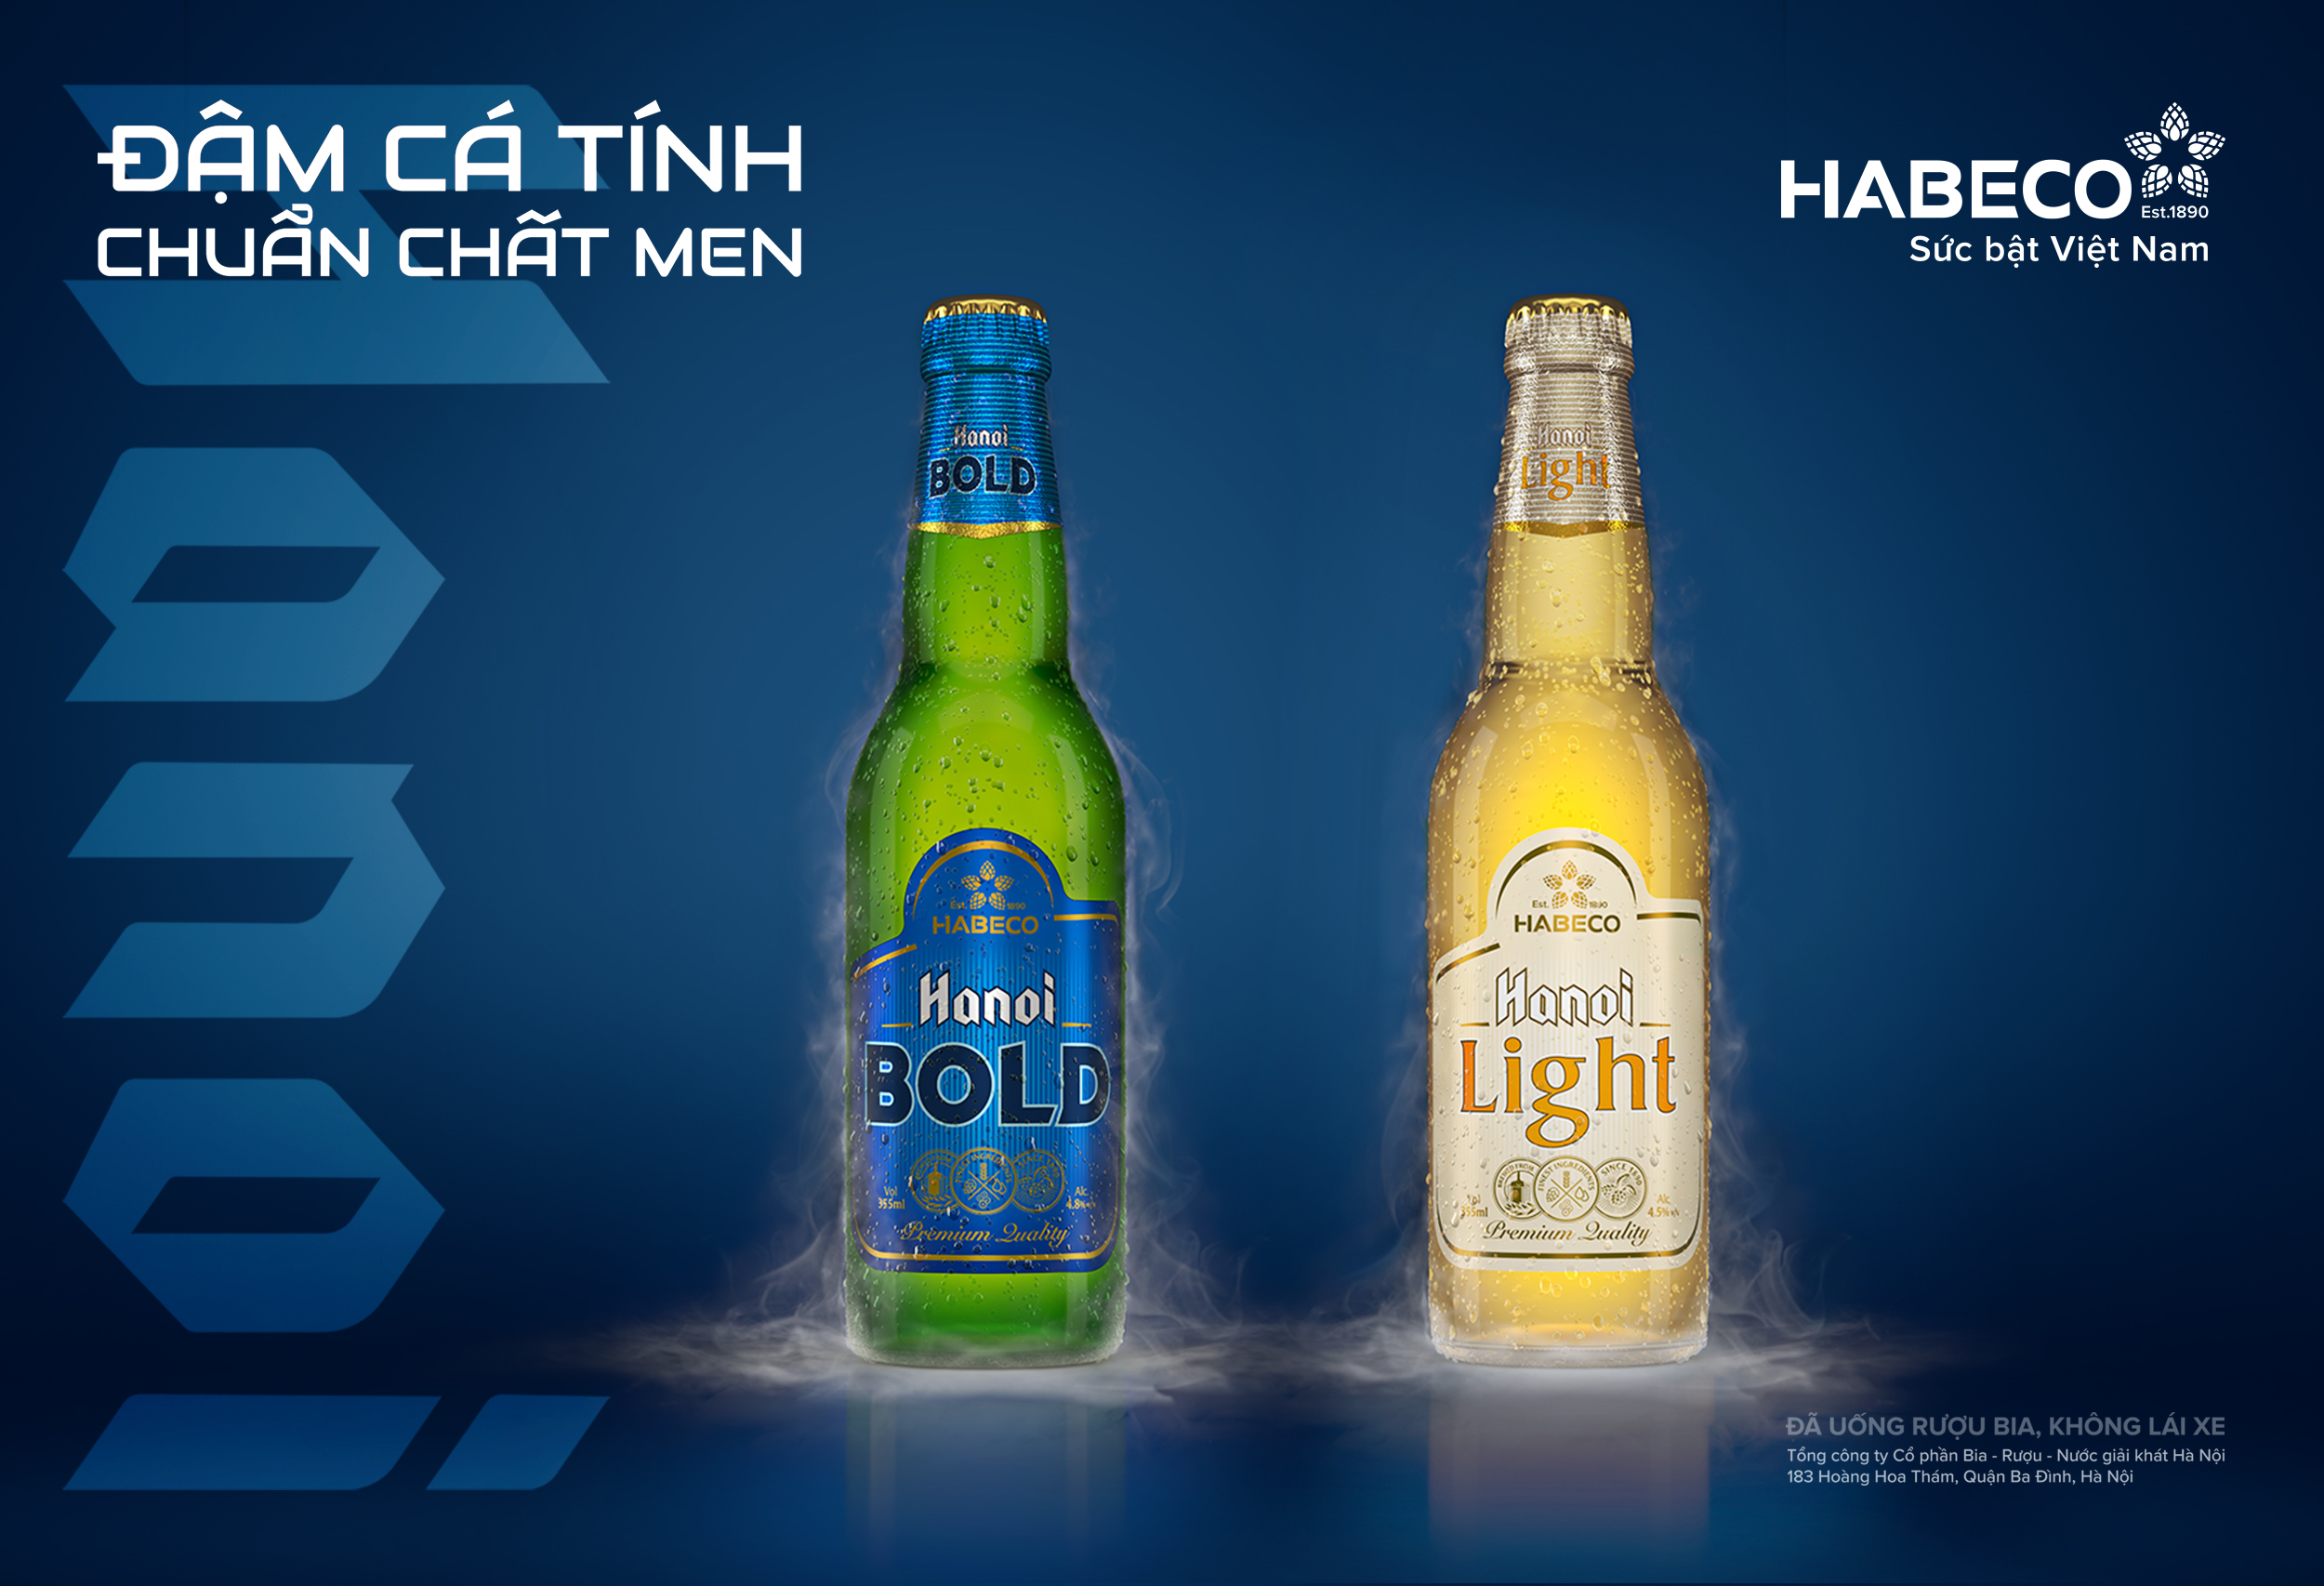 Bùng nổ trải nghiệm với Hanoi Bold và Hanoi Light - Vị bia dành cho giới trẻ